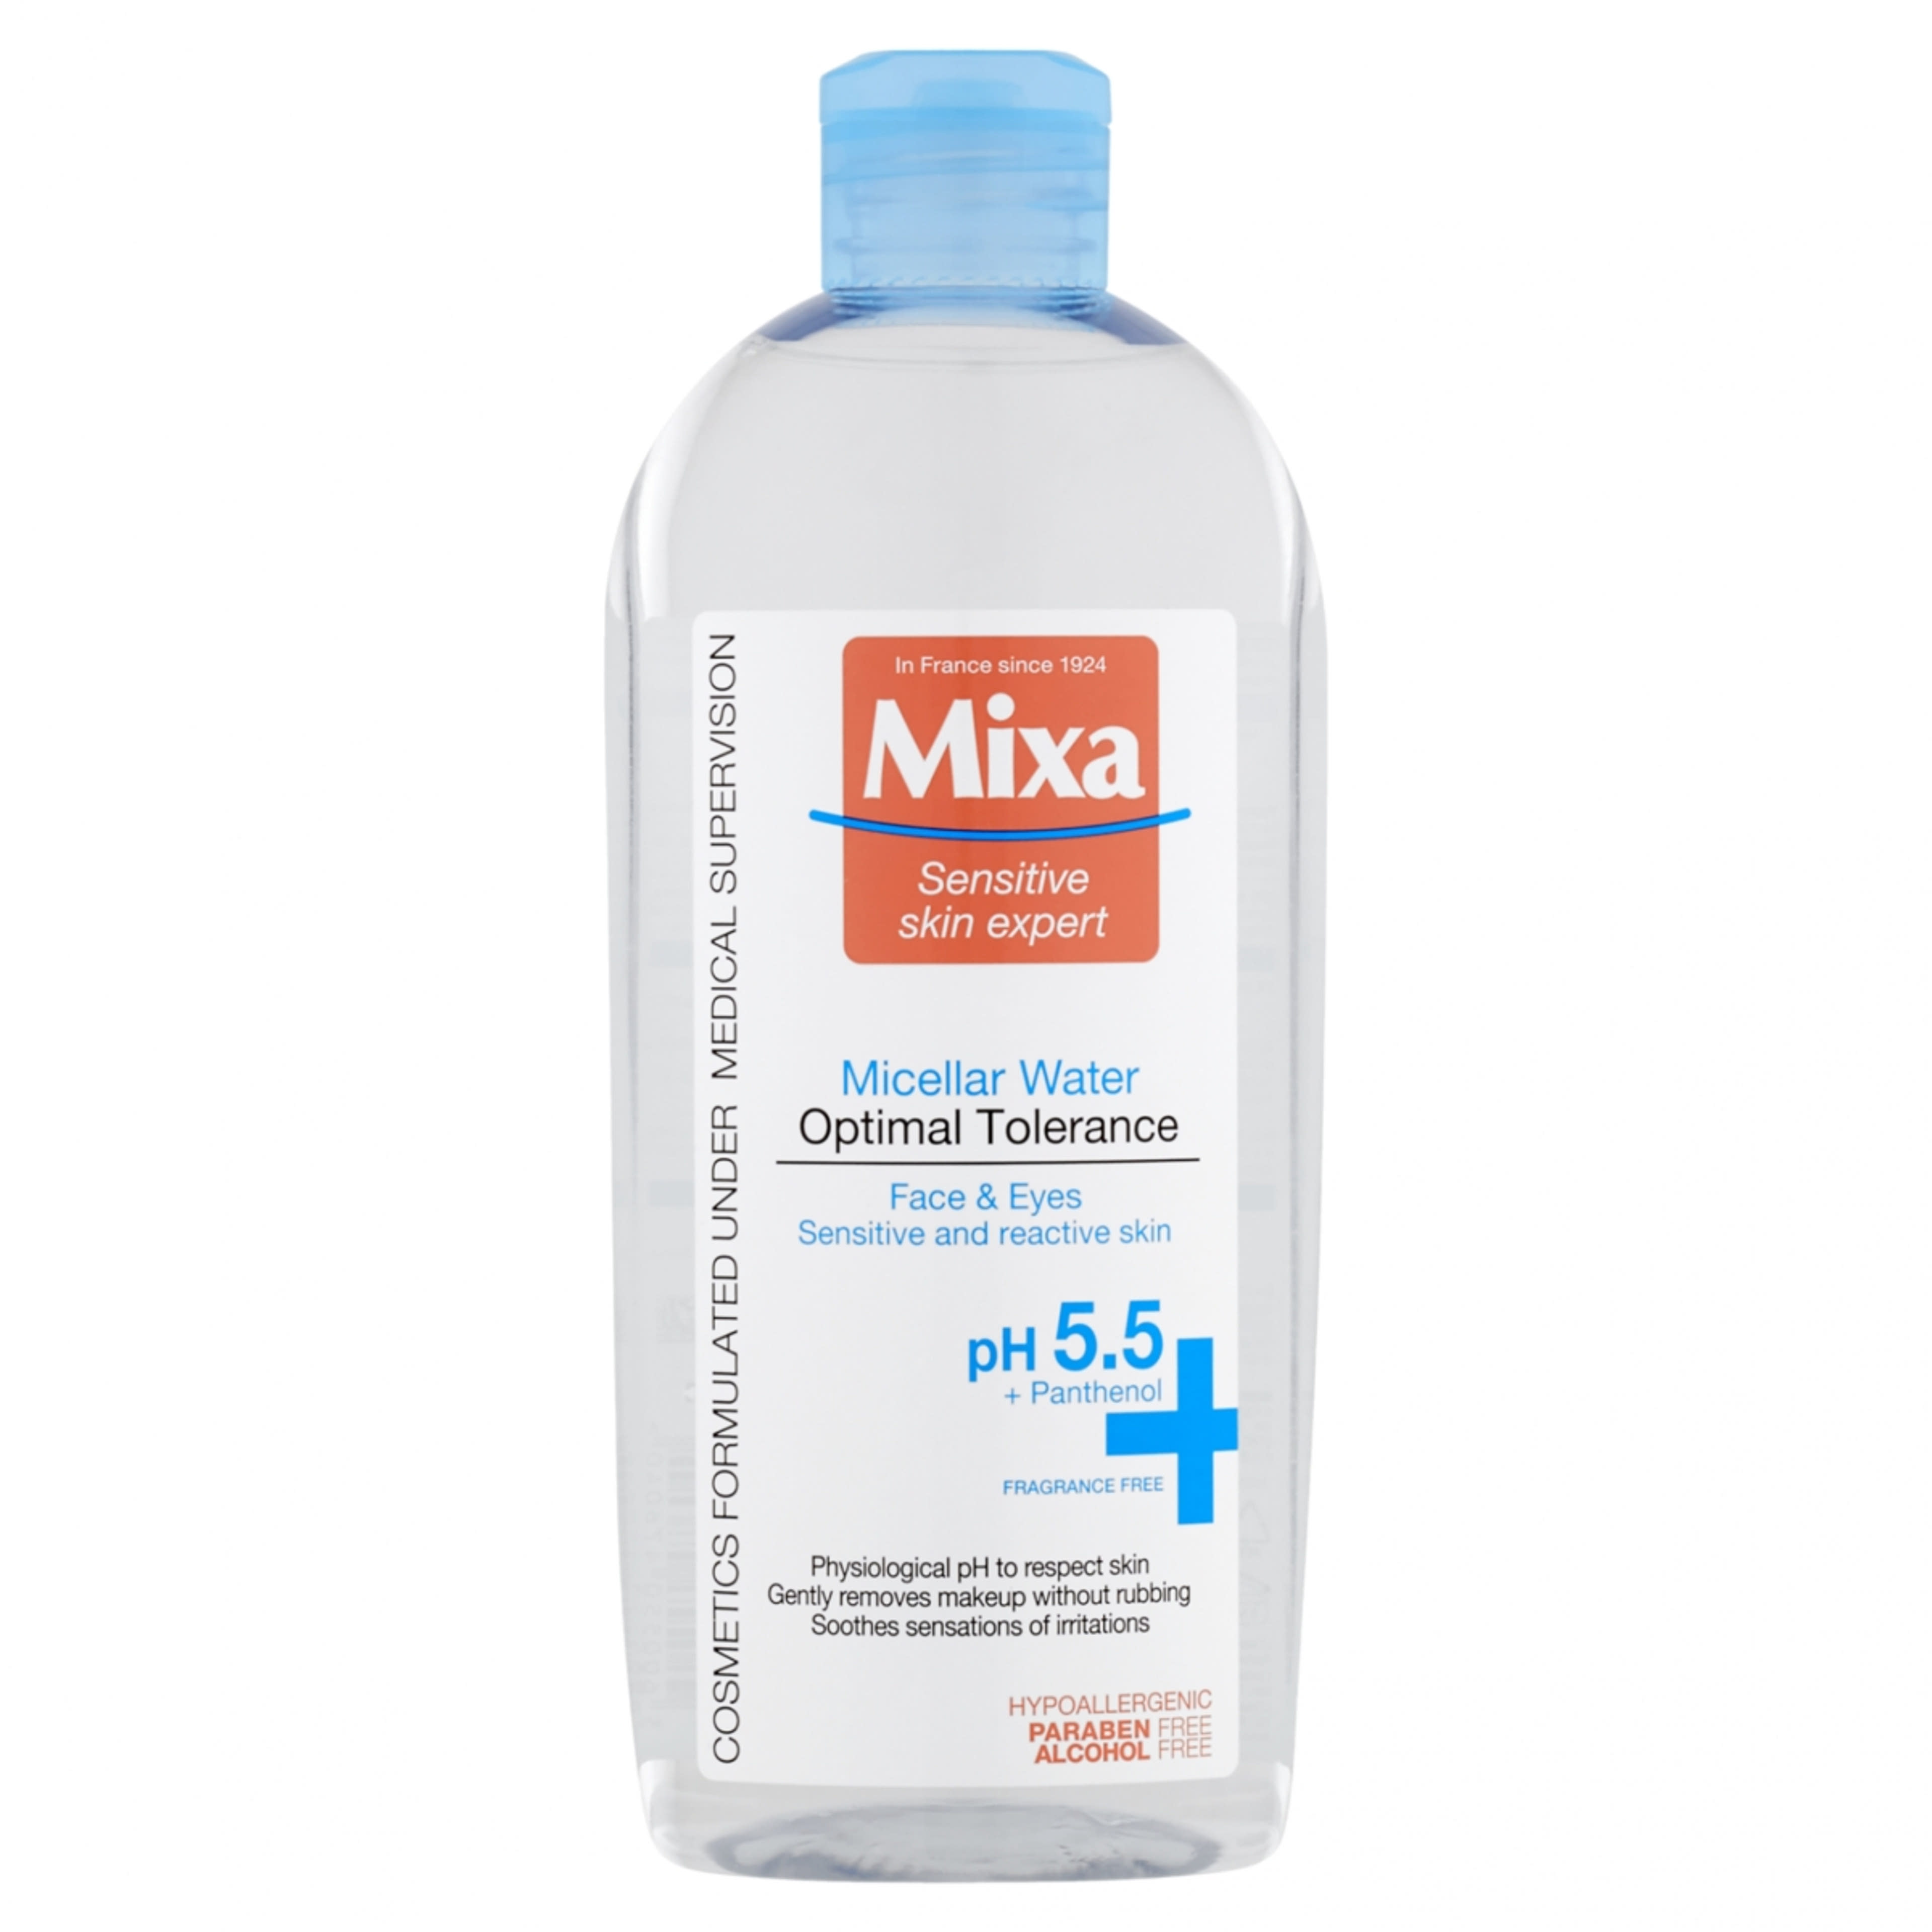 Mixa Optimal Tolerance micellás víz érzékeny és reaktív bőrre - 400 ml